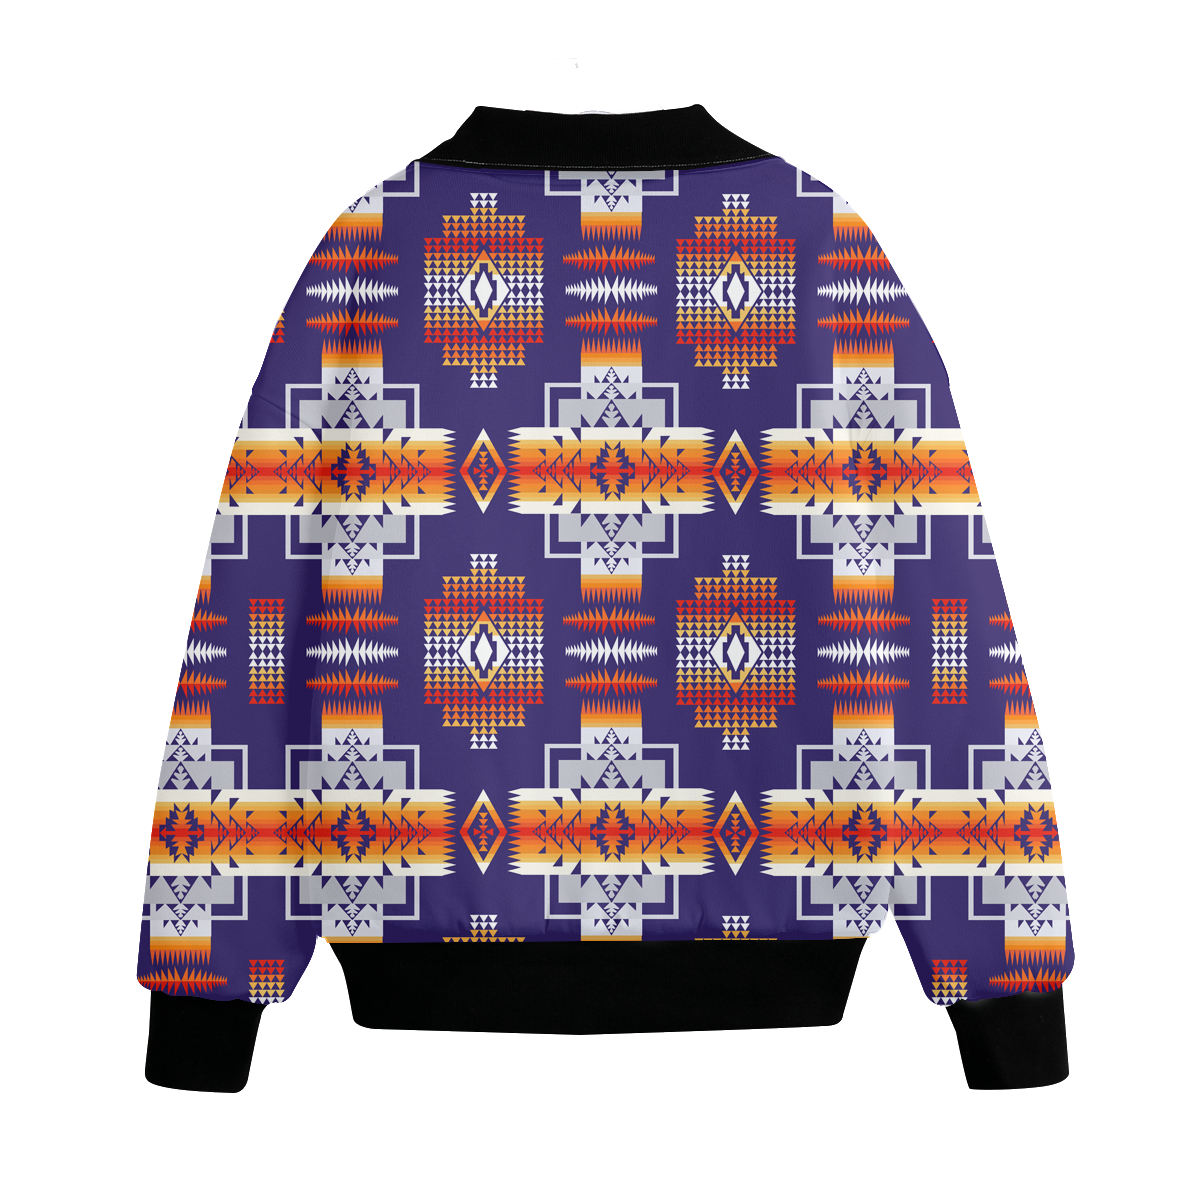 Powwow Storegb nat0004 pattern native american unisex knitted fleece lapel outwear